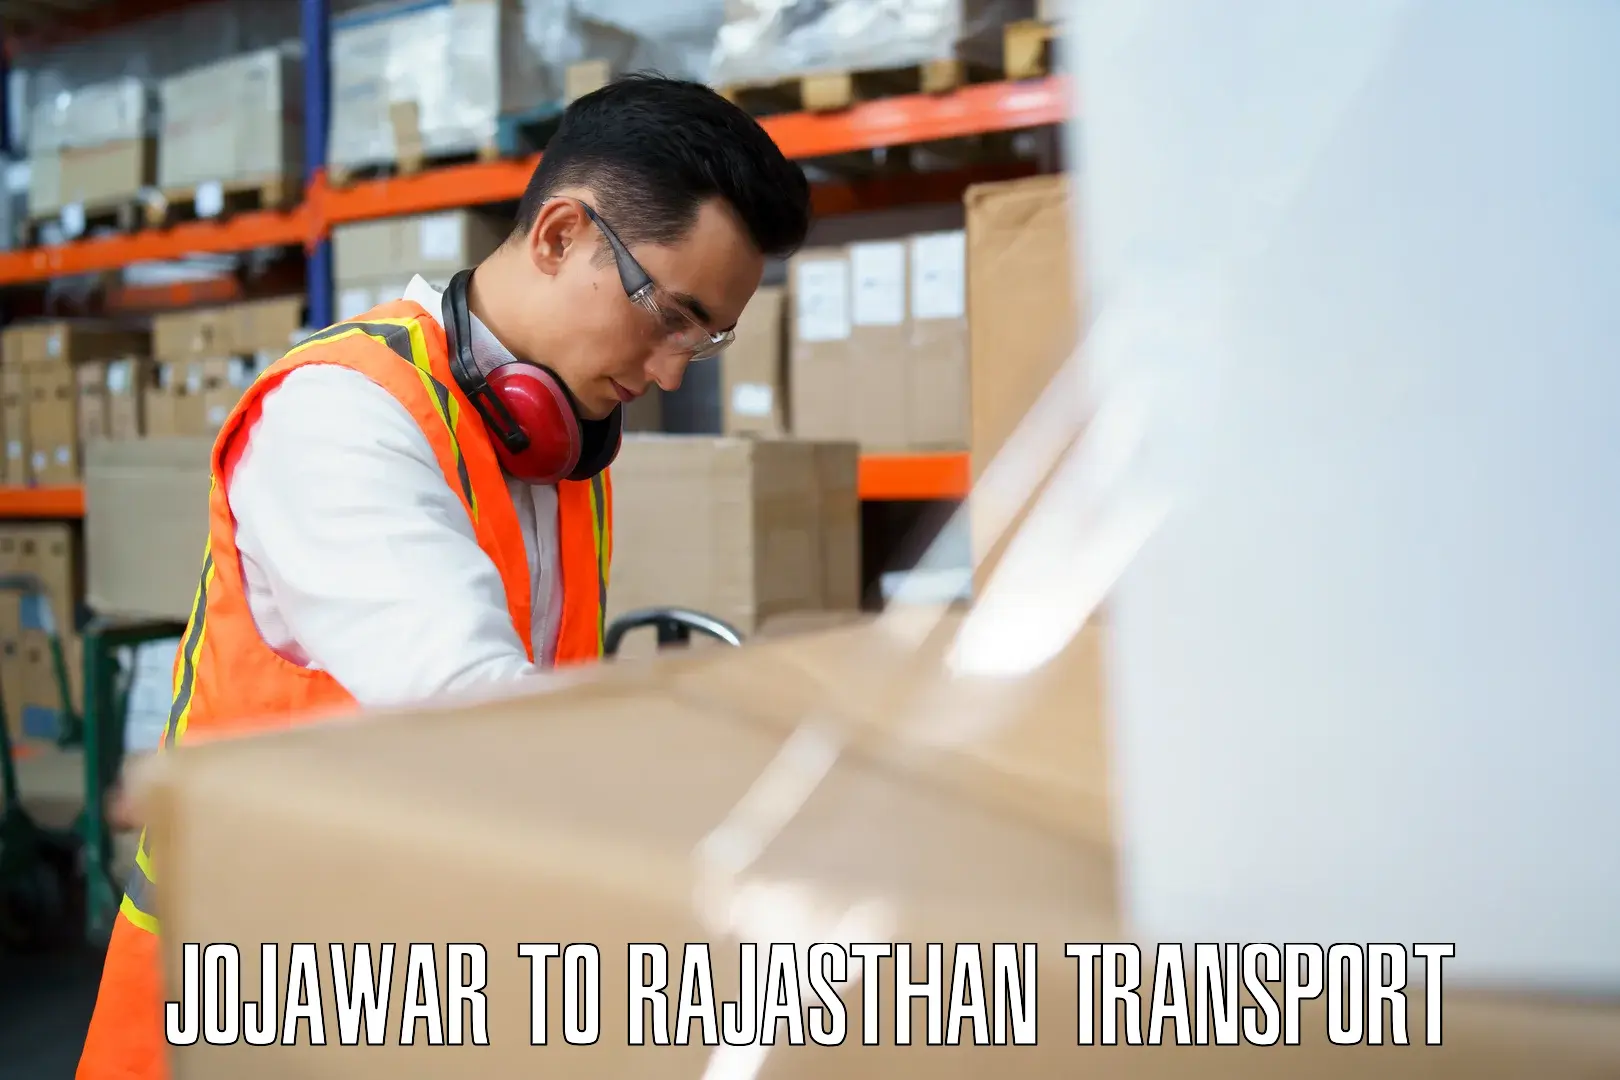 Interstate transport services Jojawar to Rajasthan